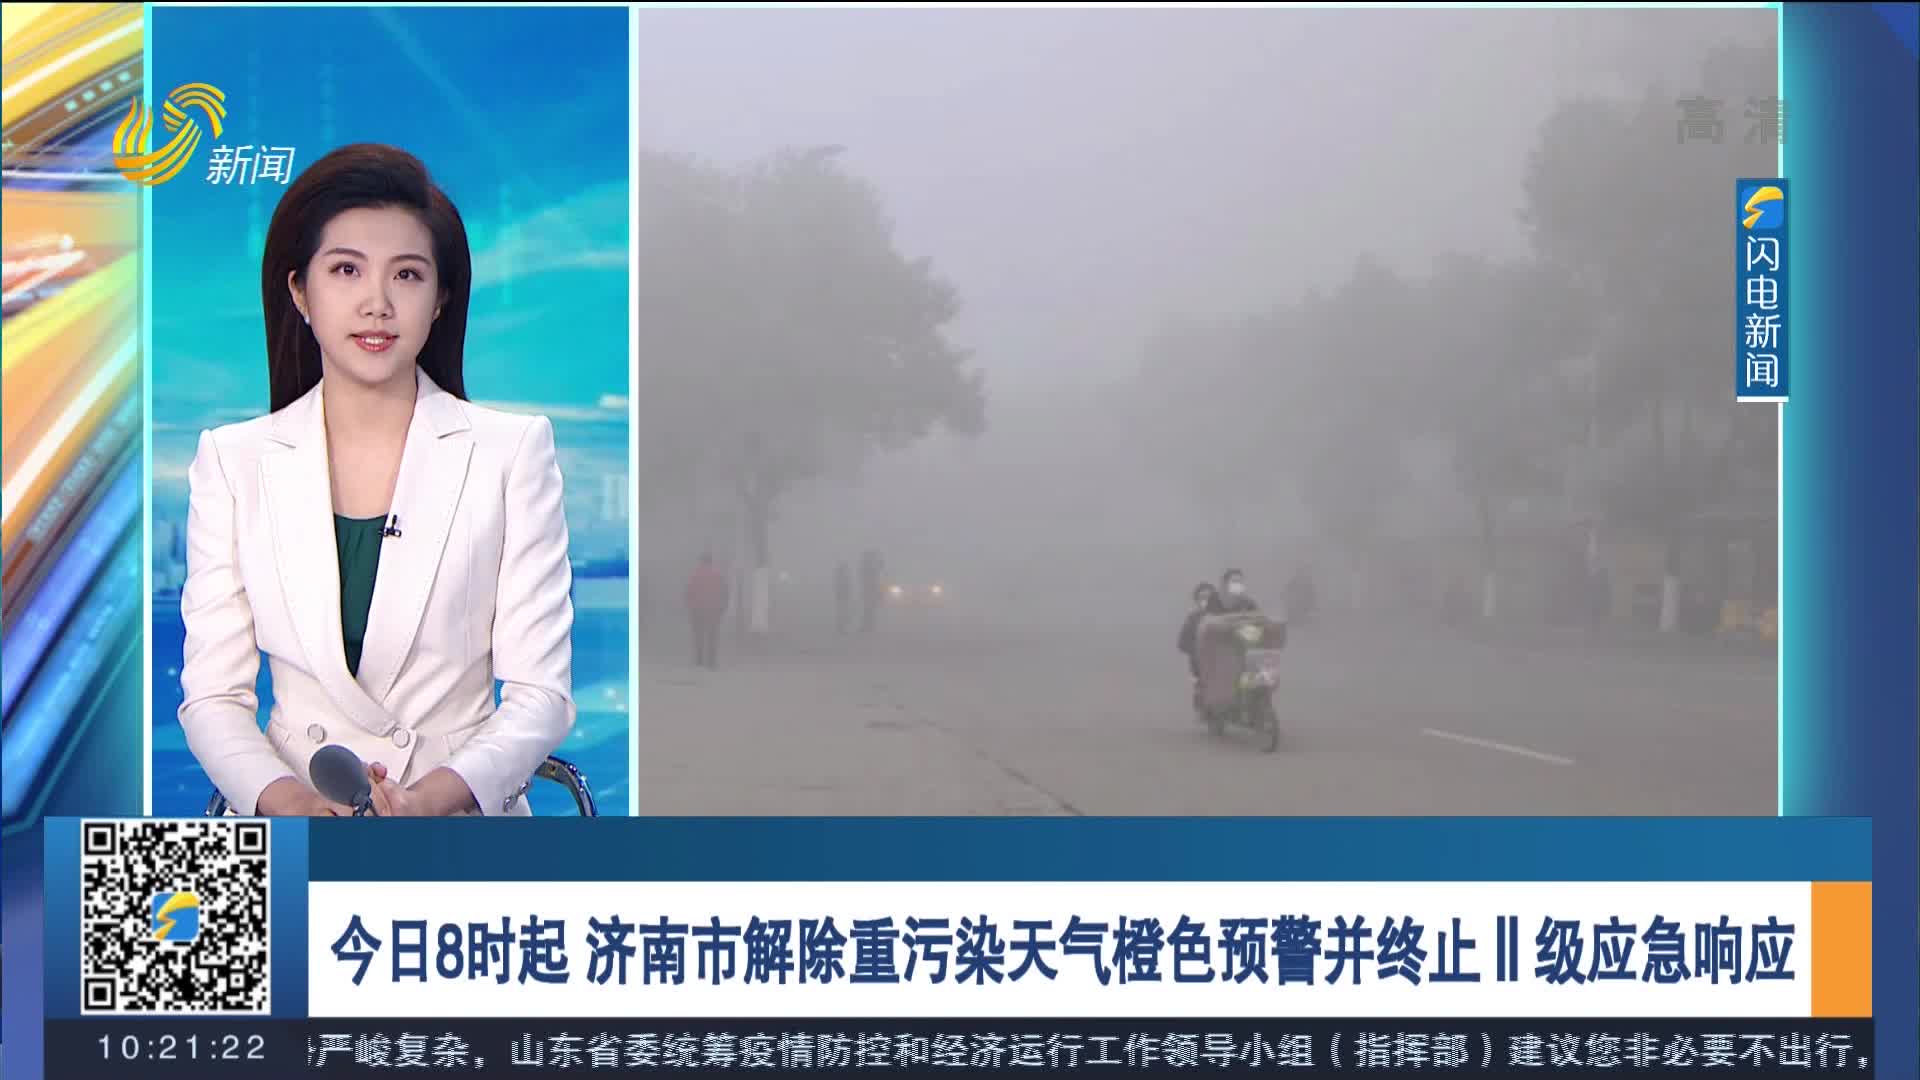 今日8时起 济南市解除重污染天气橙色预警并终止Ⅱ级应急响应